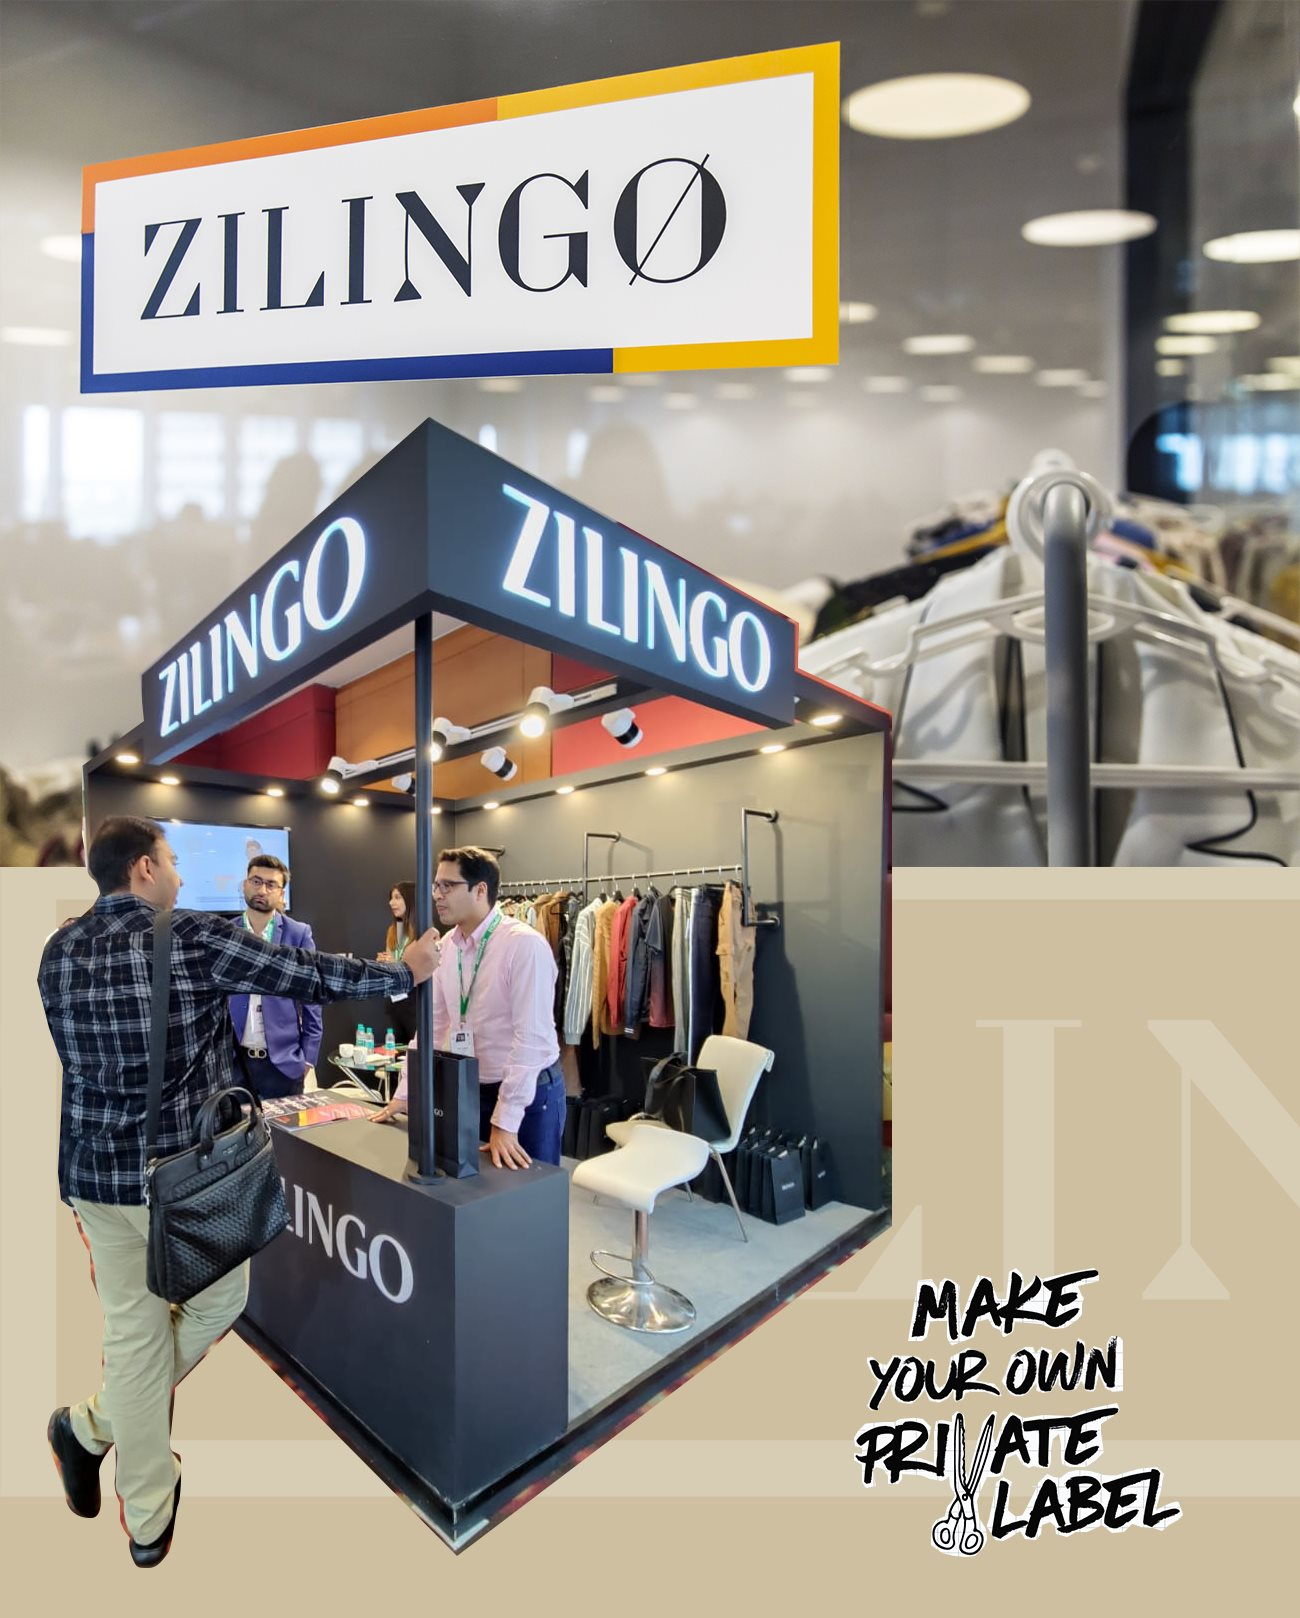 Zilingo - Startup thời trang chưa kịp hóa ‘kỳ lân’ đã lụi tàn: CEO ‘cổ súy’ tăng trưởng bằng mọi giá, có thời điểm không đủ tiền mặt để tồn tại - Ảnh 7.